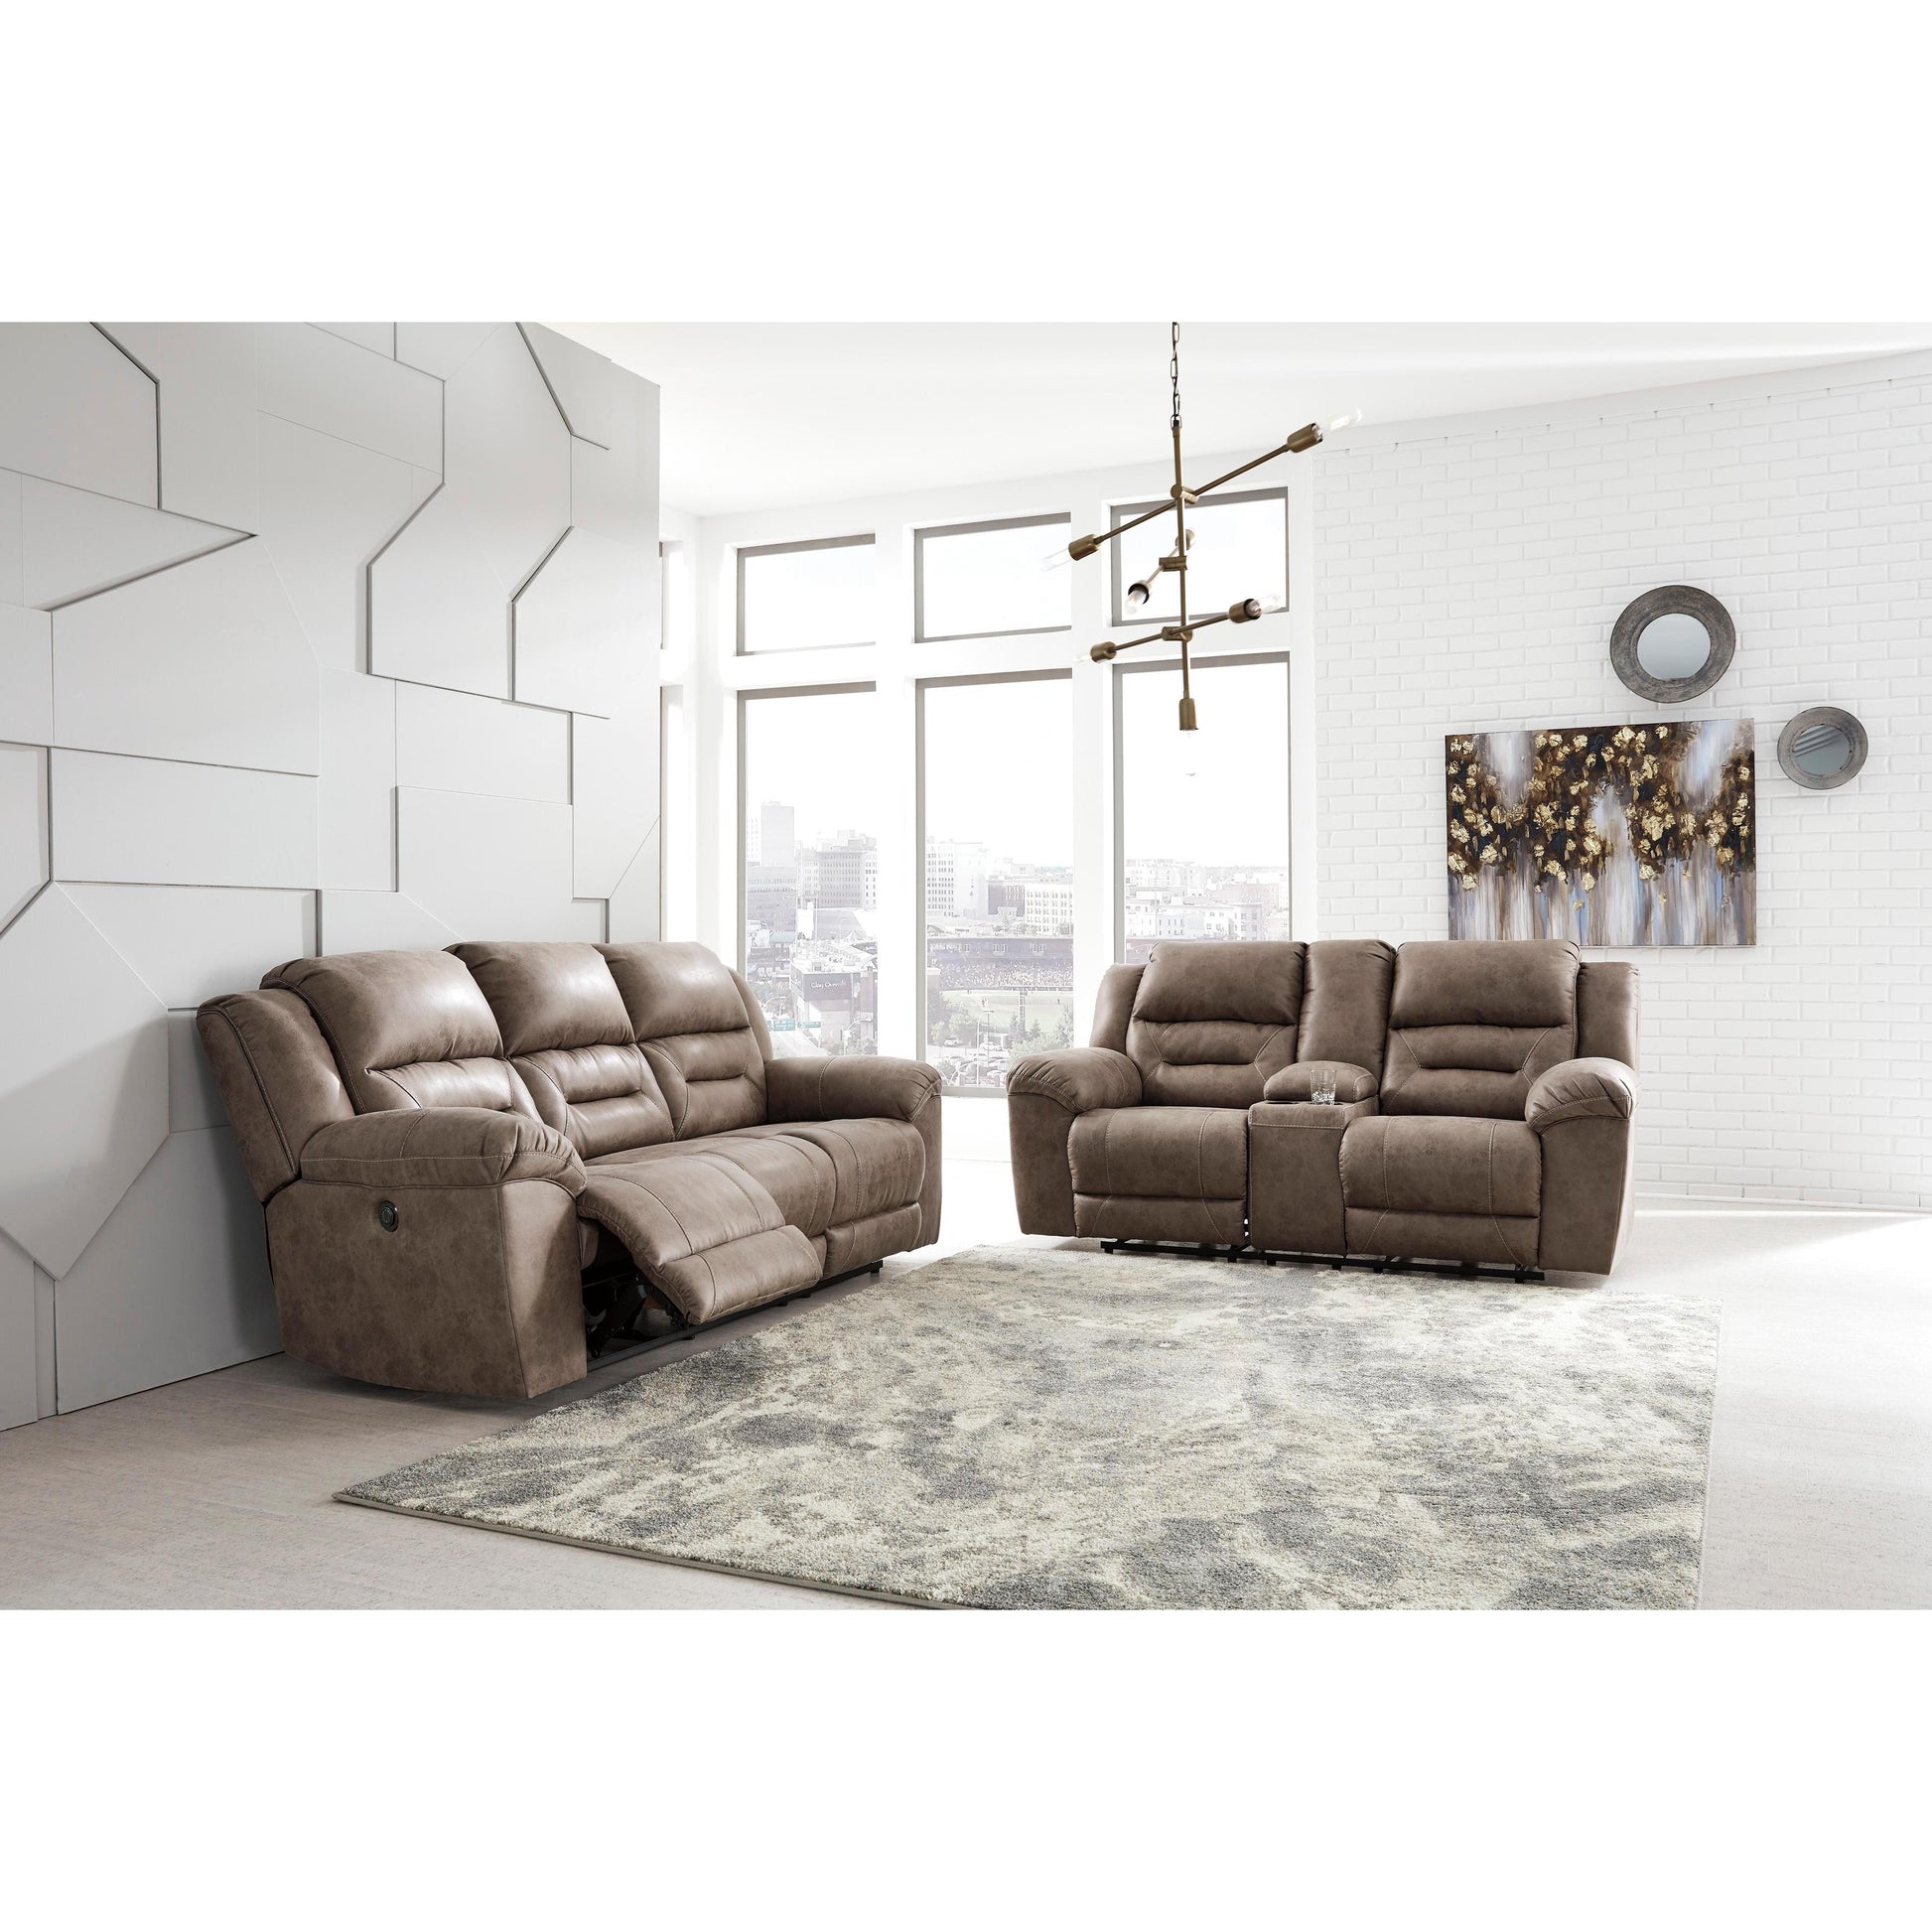 Signature Design by Ashley Stoneland 39905U4 2 pc Reclining Living Room Set IMAGE 2